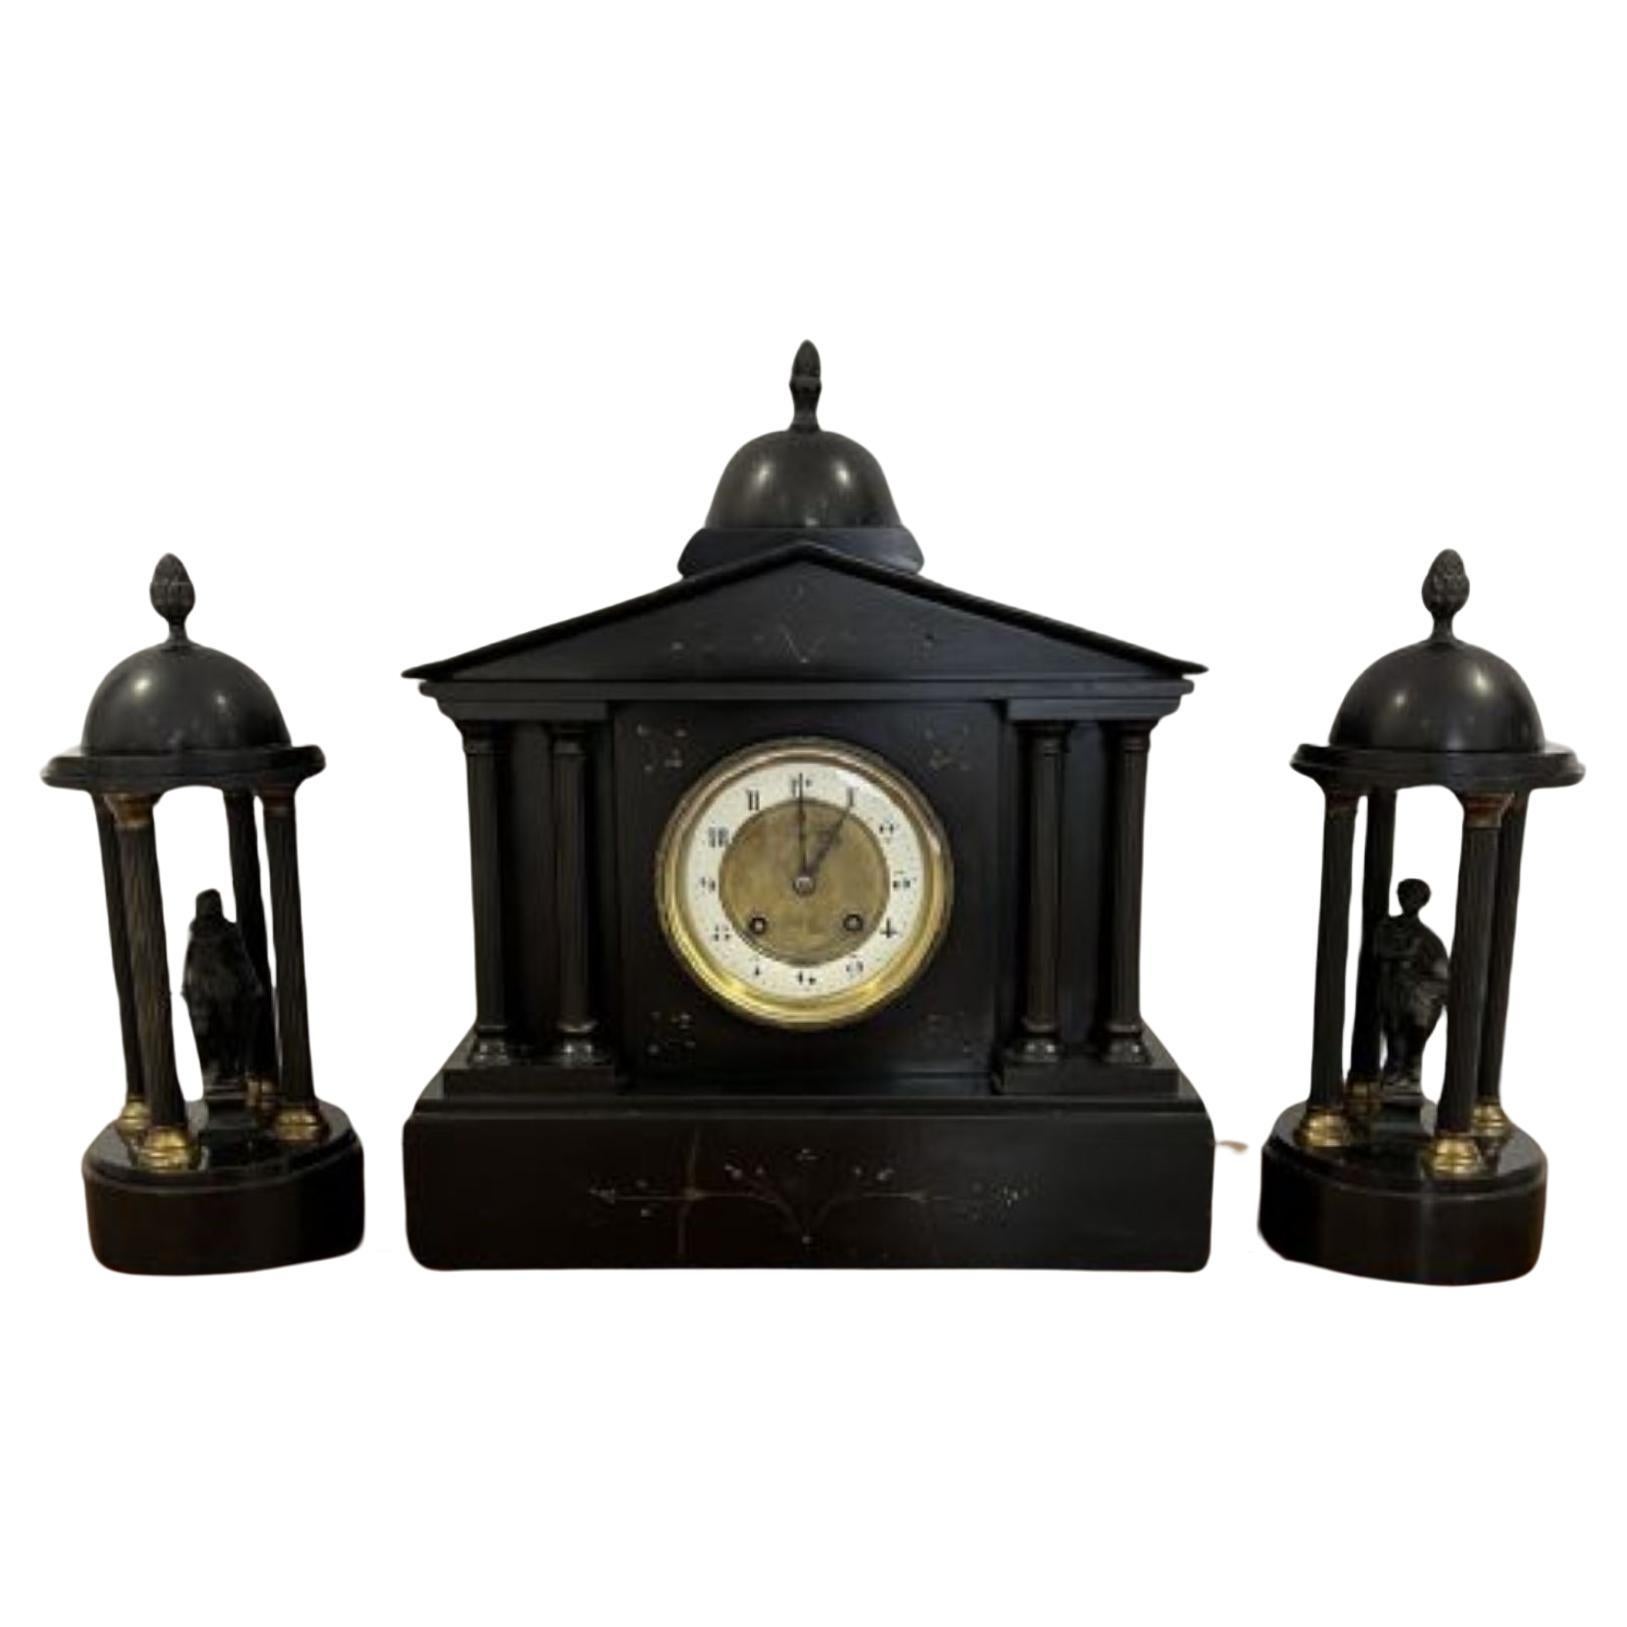 Merveilleux ensemble d'horloges de huit jours en marbre de qualité victorienne ancienne